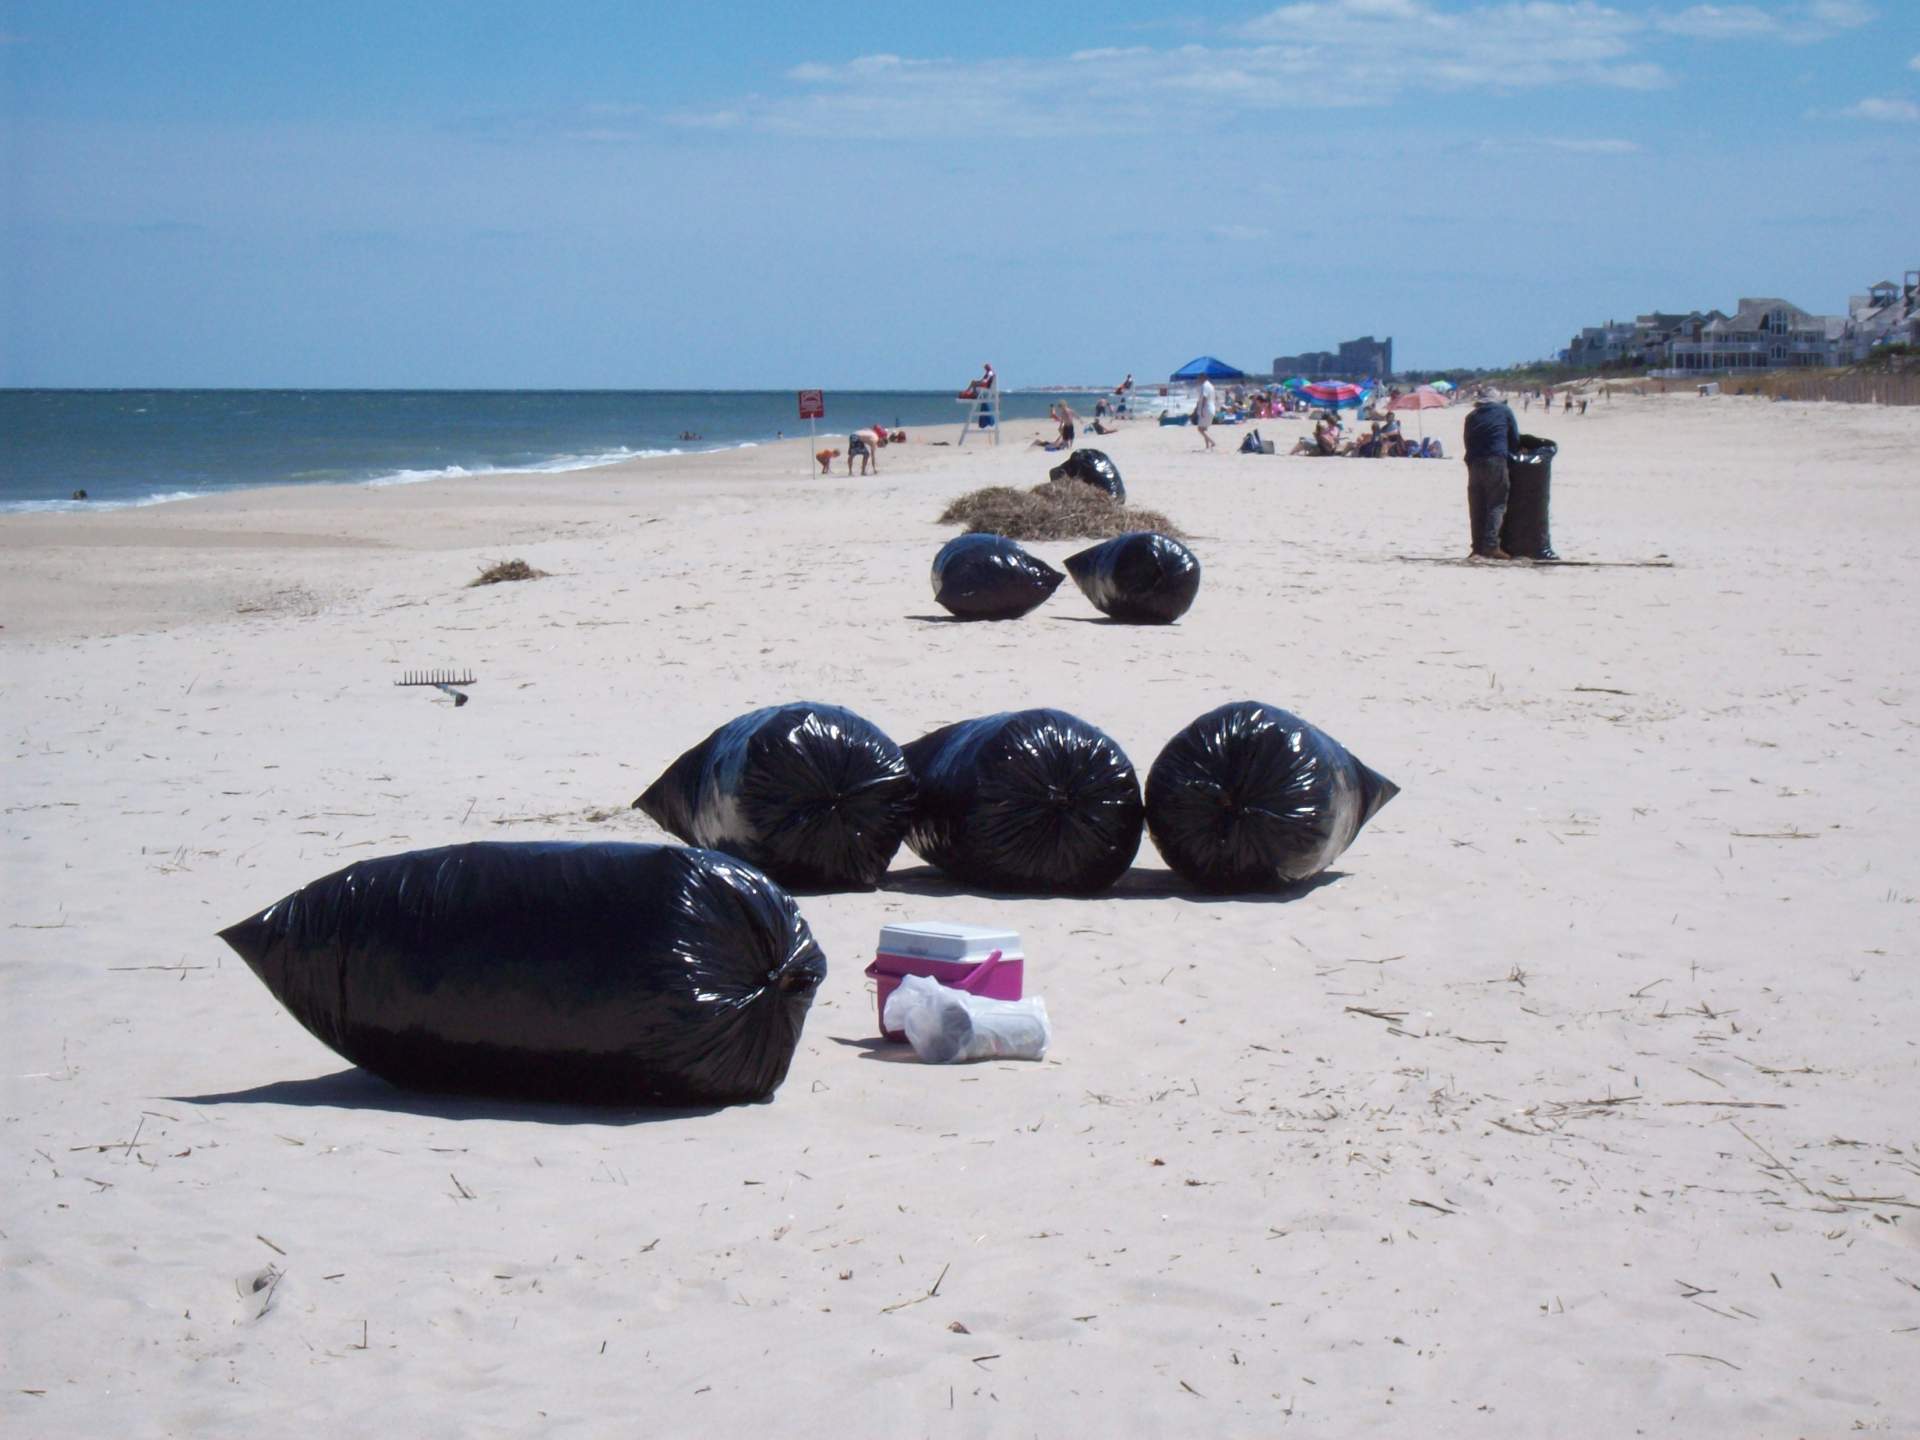 Bagged beach debris